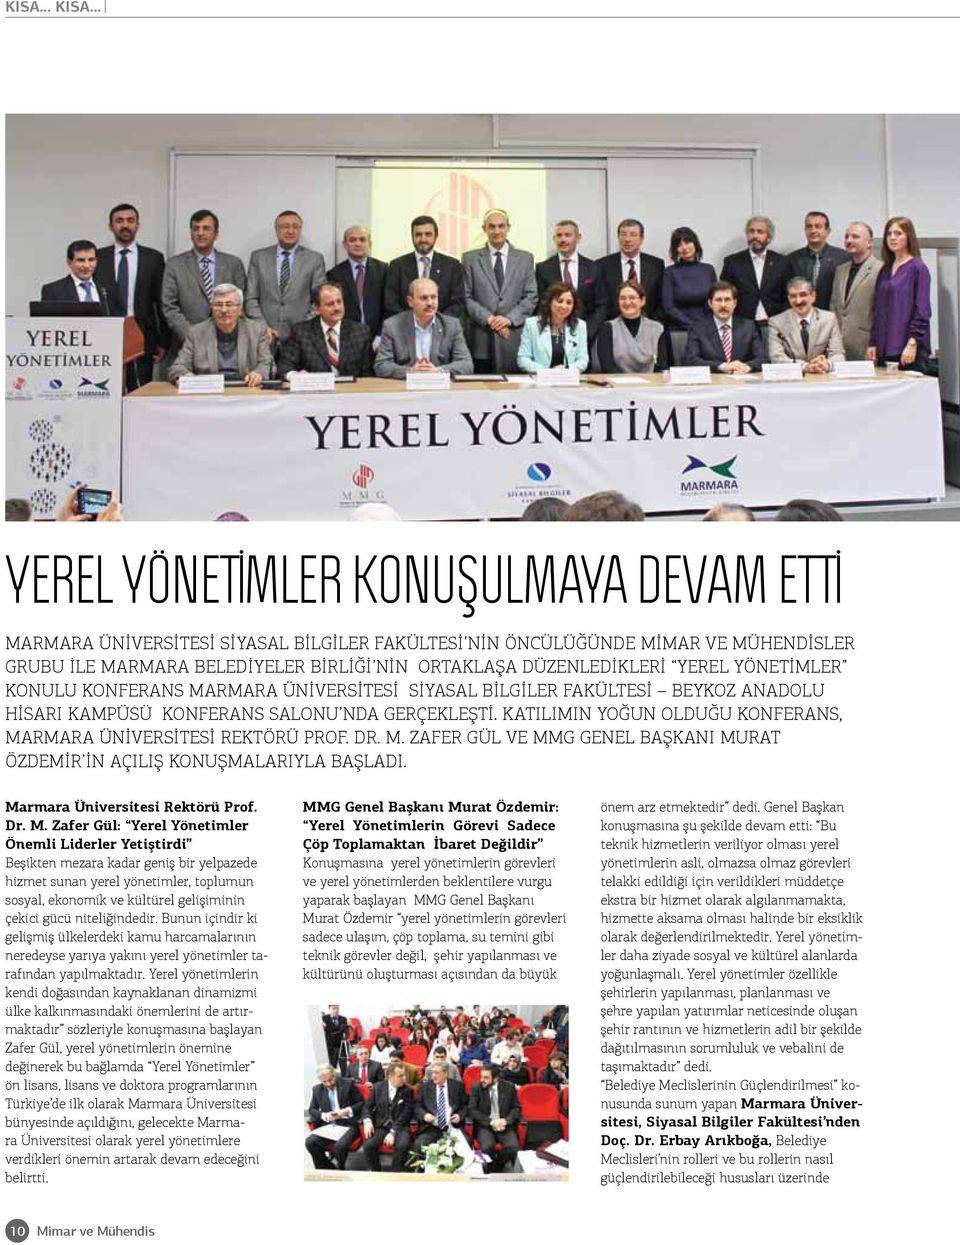 Yerel Yönetimler konulu konferans Marmara Üniversitesi Siyasal Bilgiler Fakültesi Beykoz Anadolu Hisarı Kampüsü Konferans Salonu nda gerçekleşti.